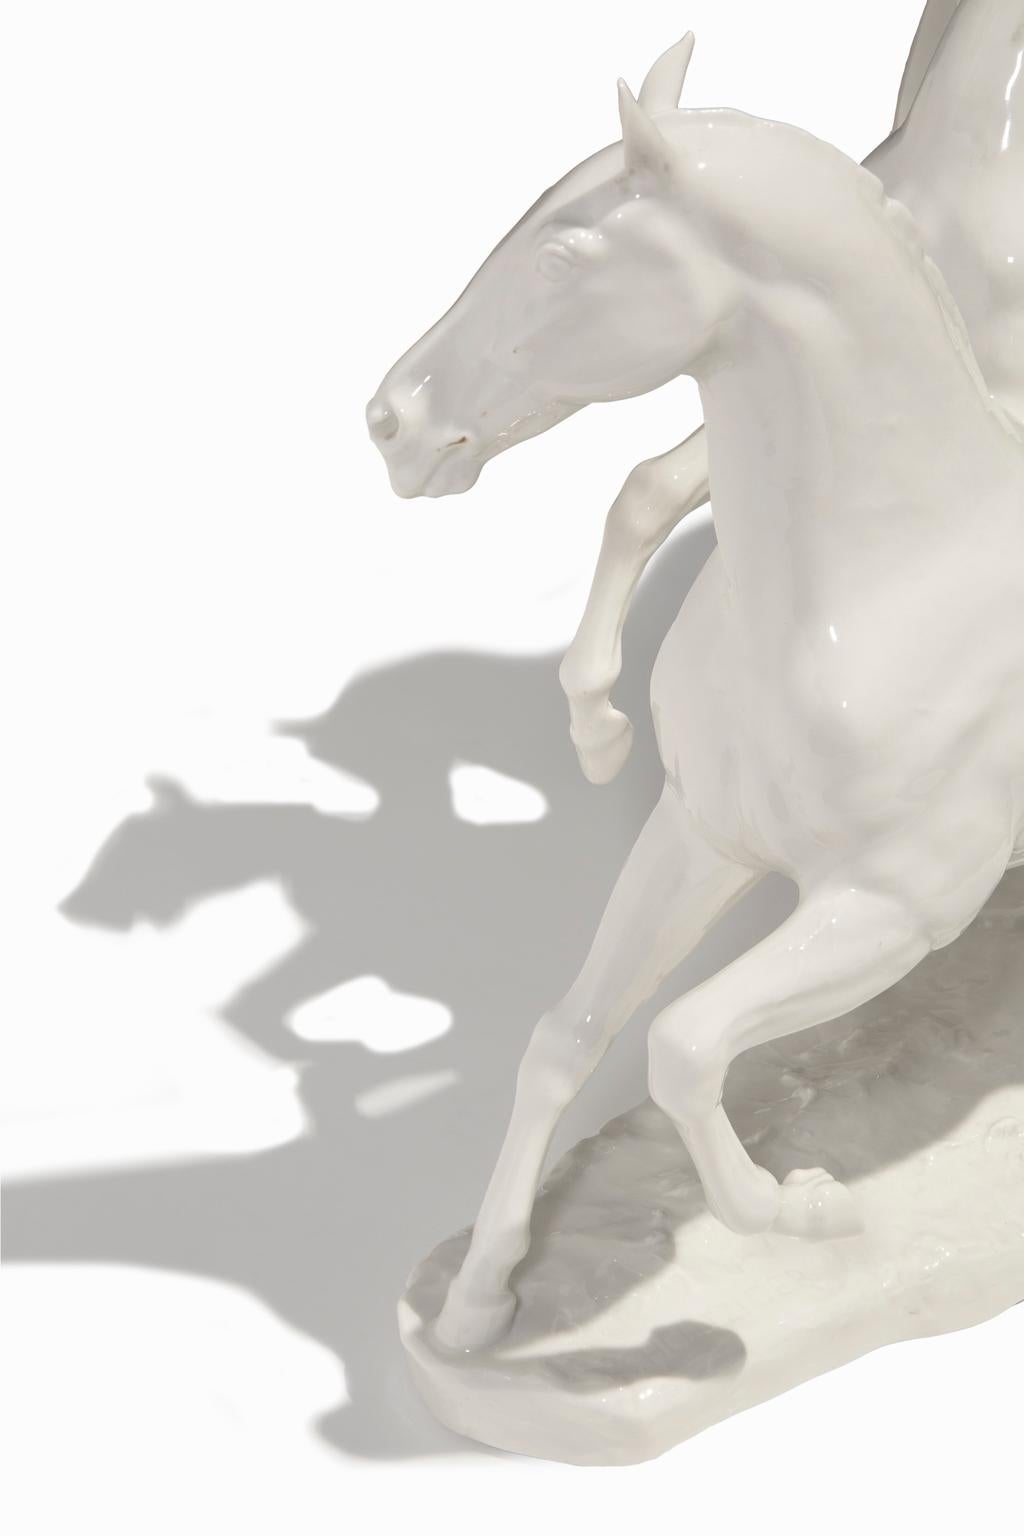 echt altmann horse figurine